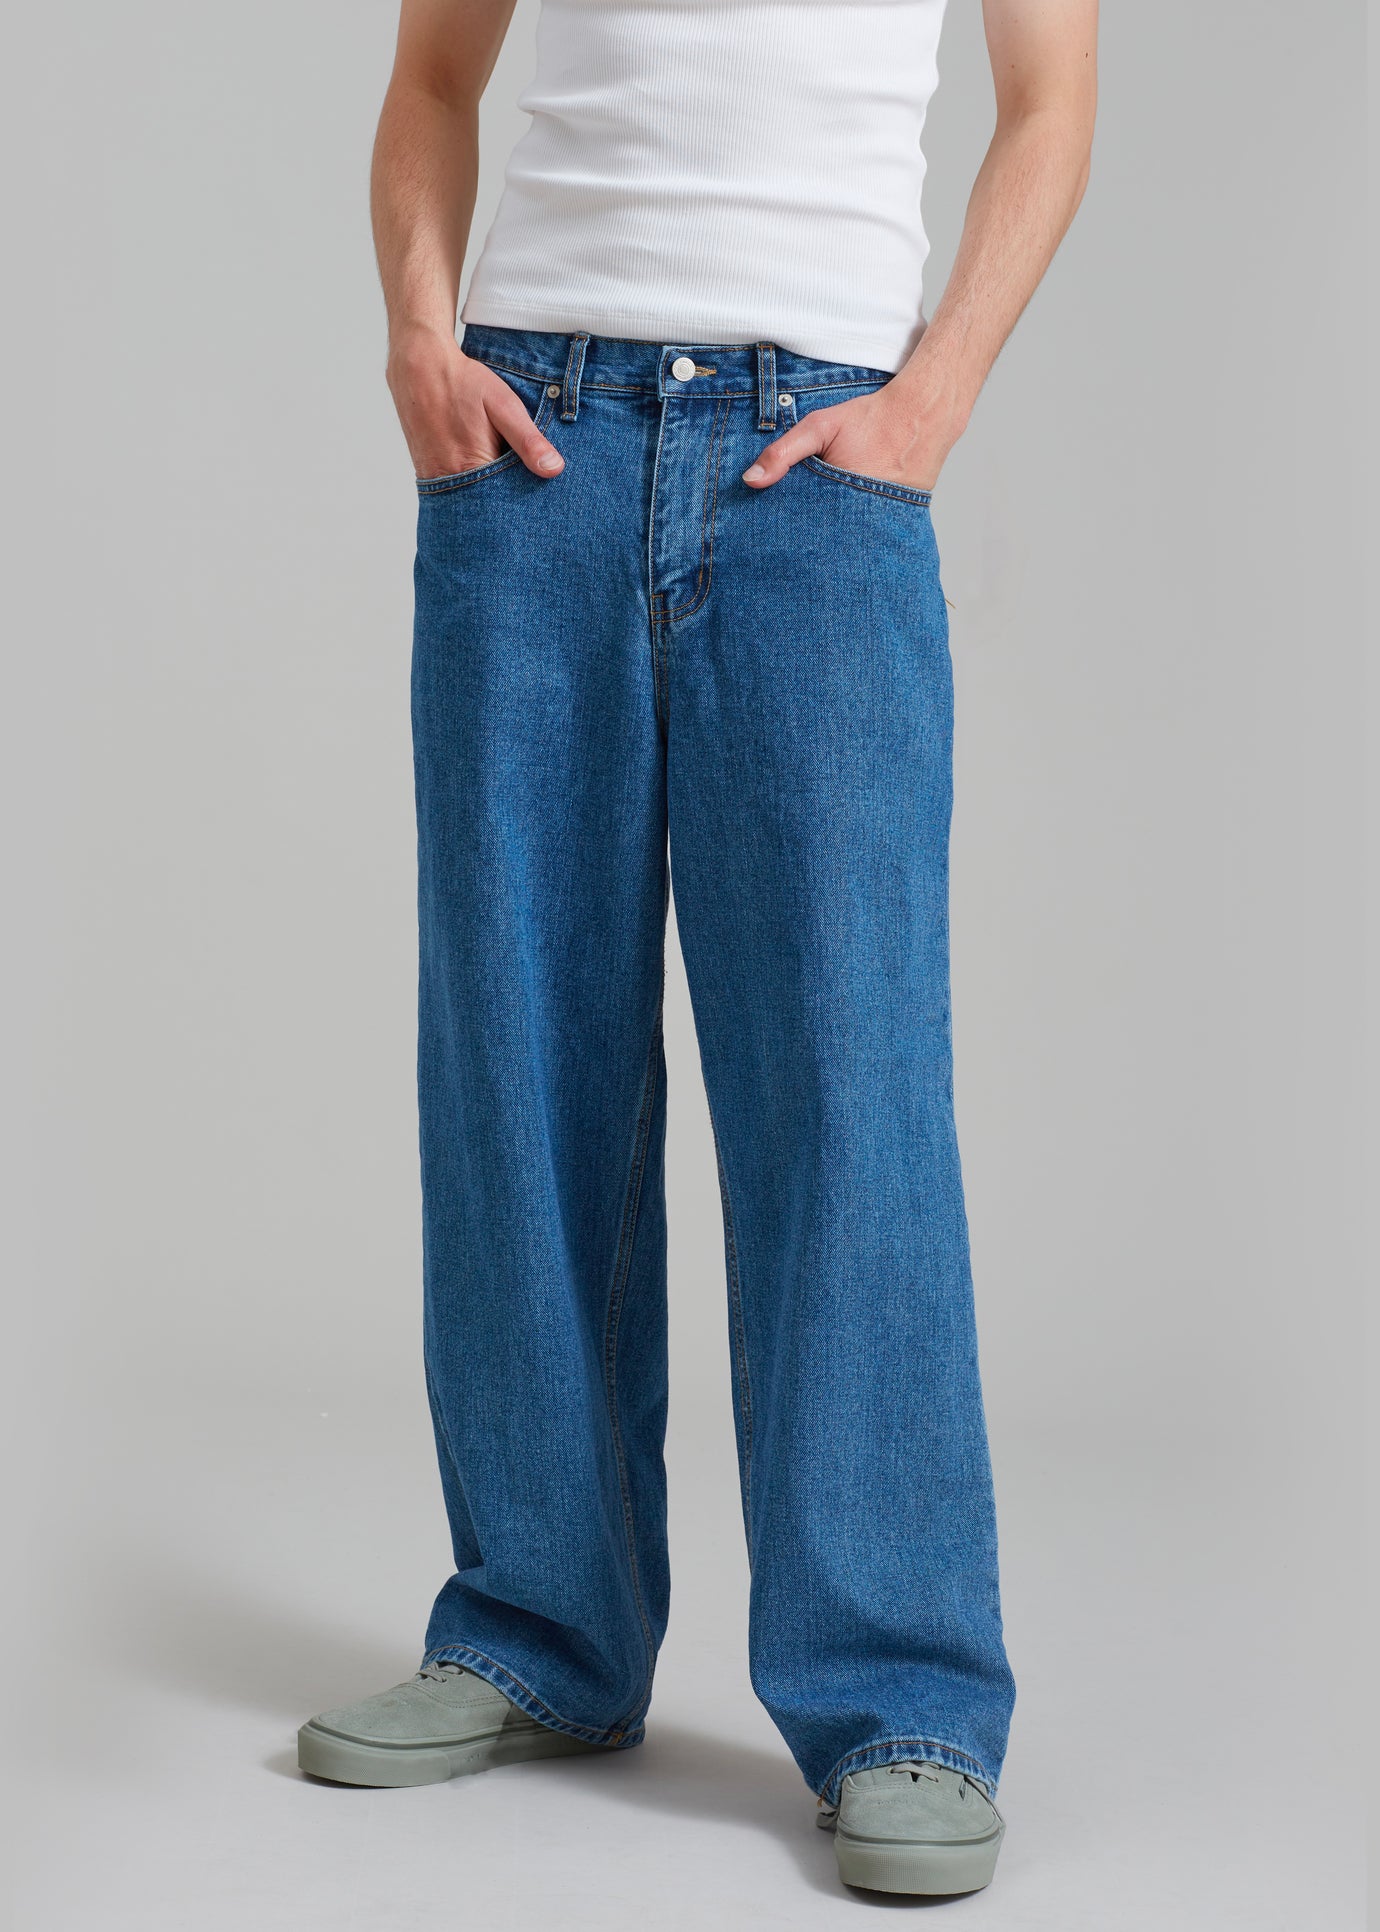 Connor Jeans - Medium Wash - 1